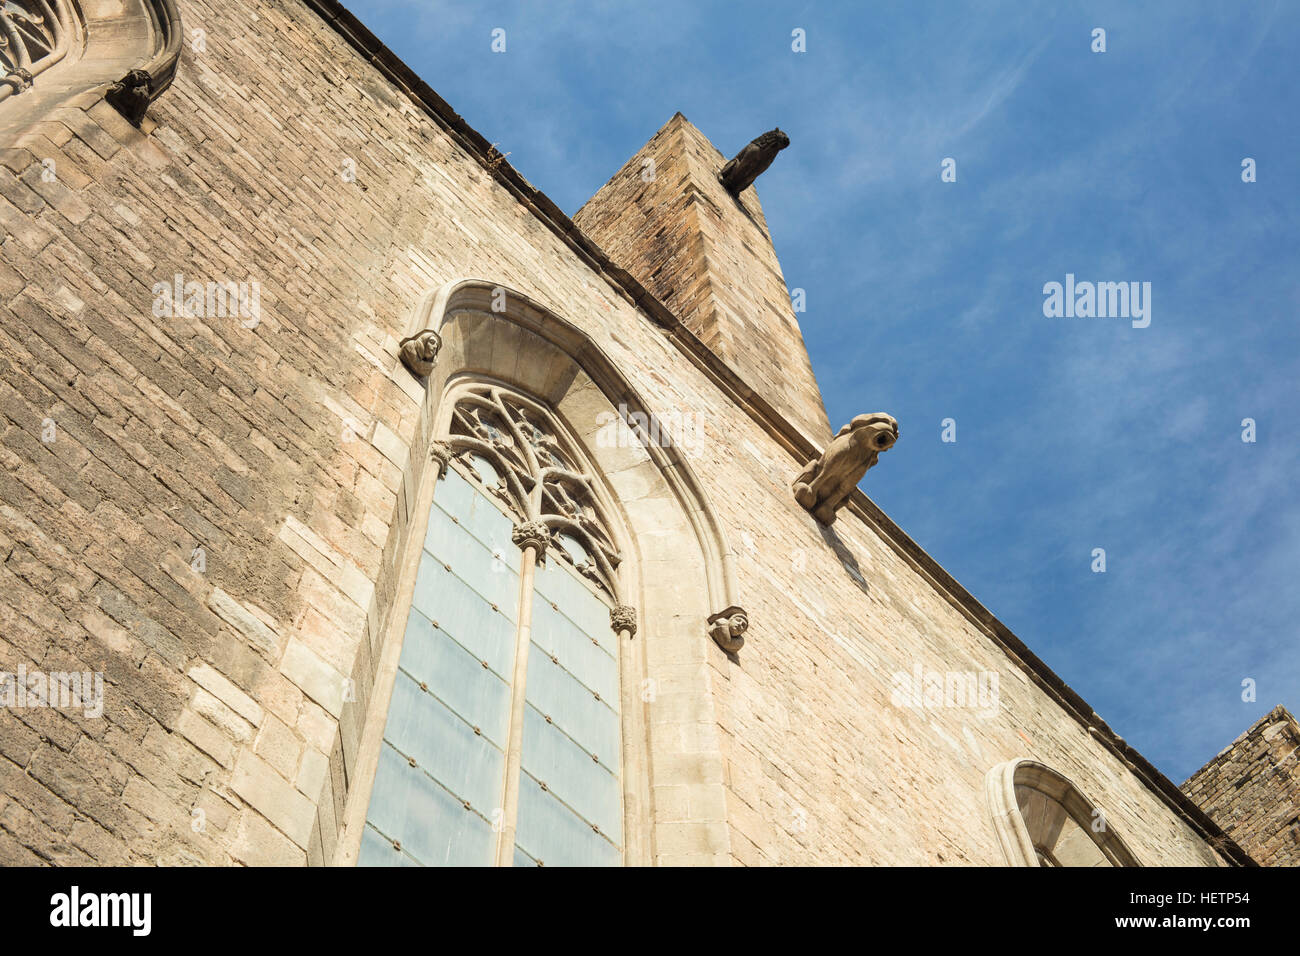 Santa Maria del Mar (Saint Mary's) dans la Cathédrale de Barcelone, Espagne. C'est un église gothique construite au cours de 1329-1383. Banque D'Images